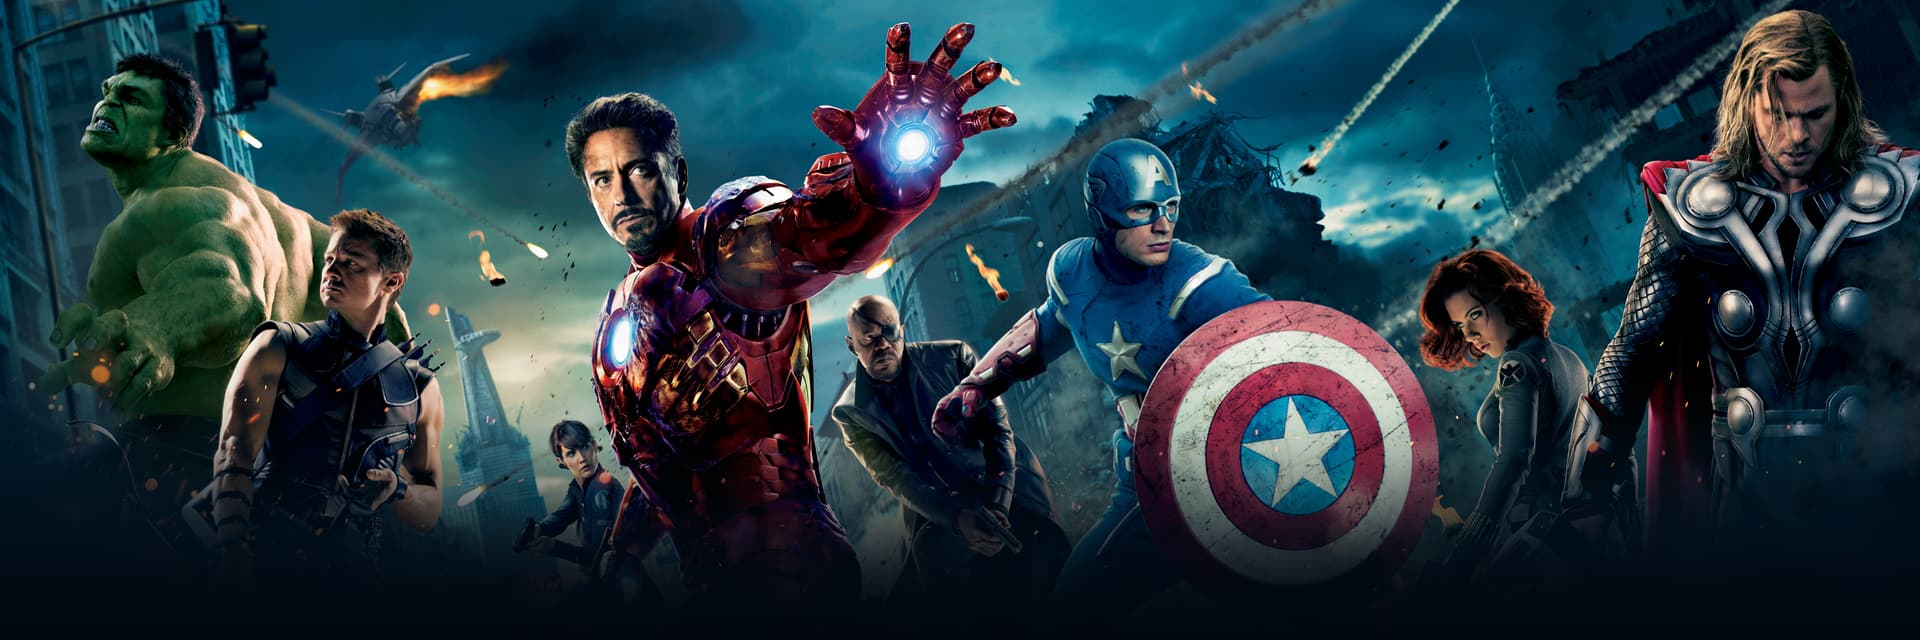 Avengers | Members, Villains, Powers, & More | Marvel